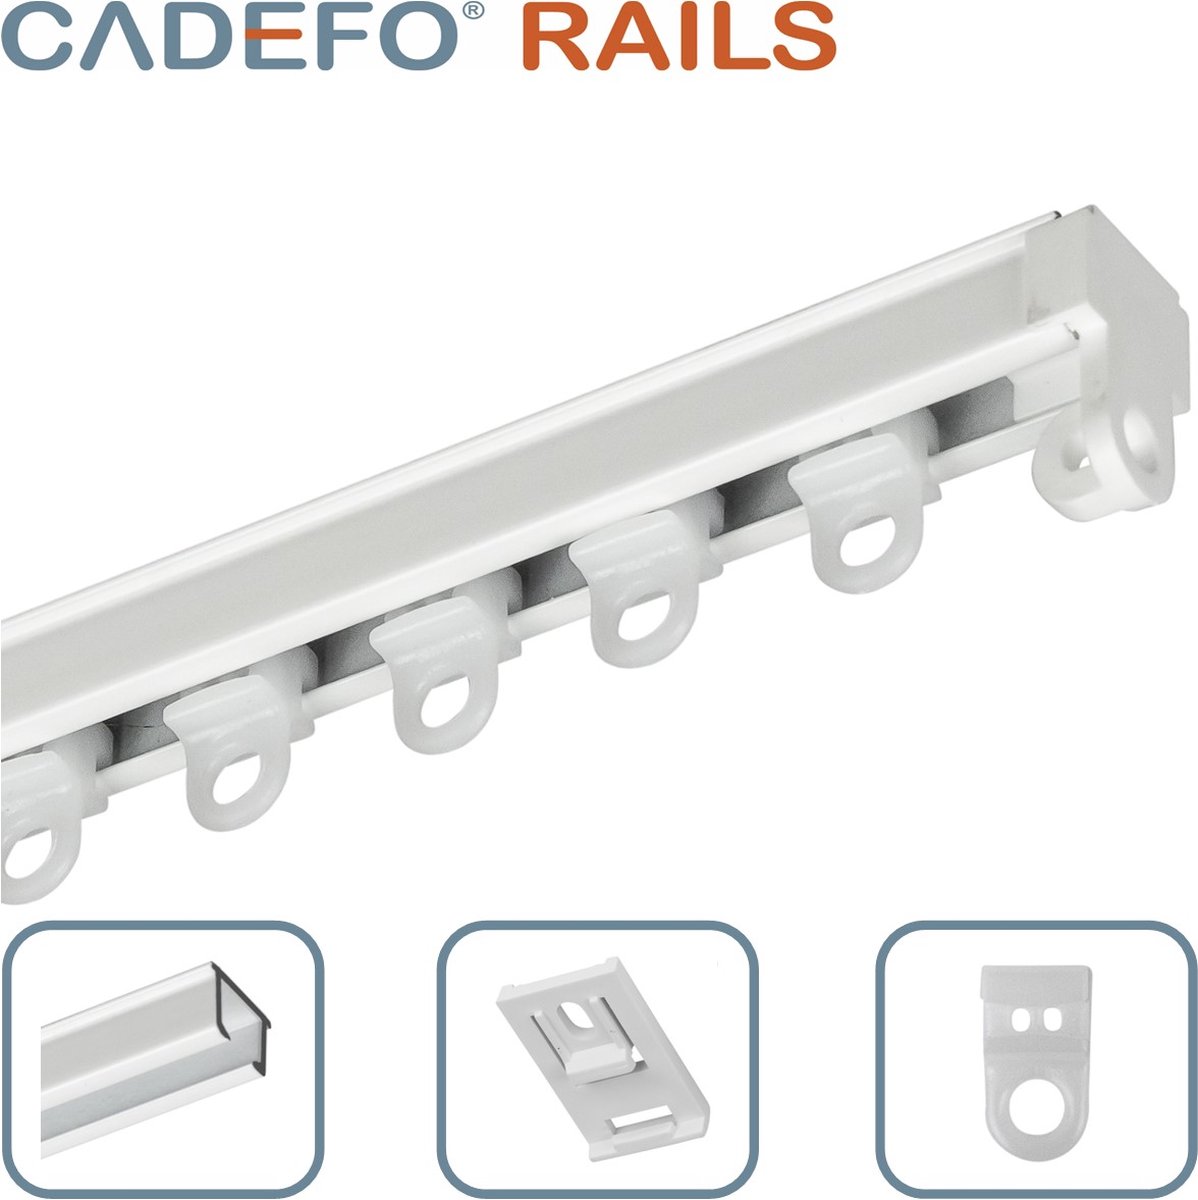 CADEFO RAILS (251 - 300 cm) Gordijnrails - Compleet op maat! - UIT 1 STUK - Leverbaar tot 6 meter - Plafondbevestiging - Lengte 299 cm